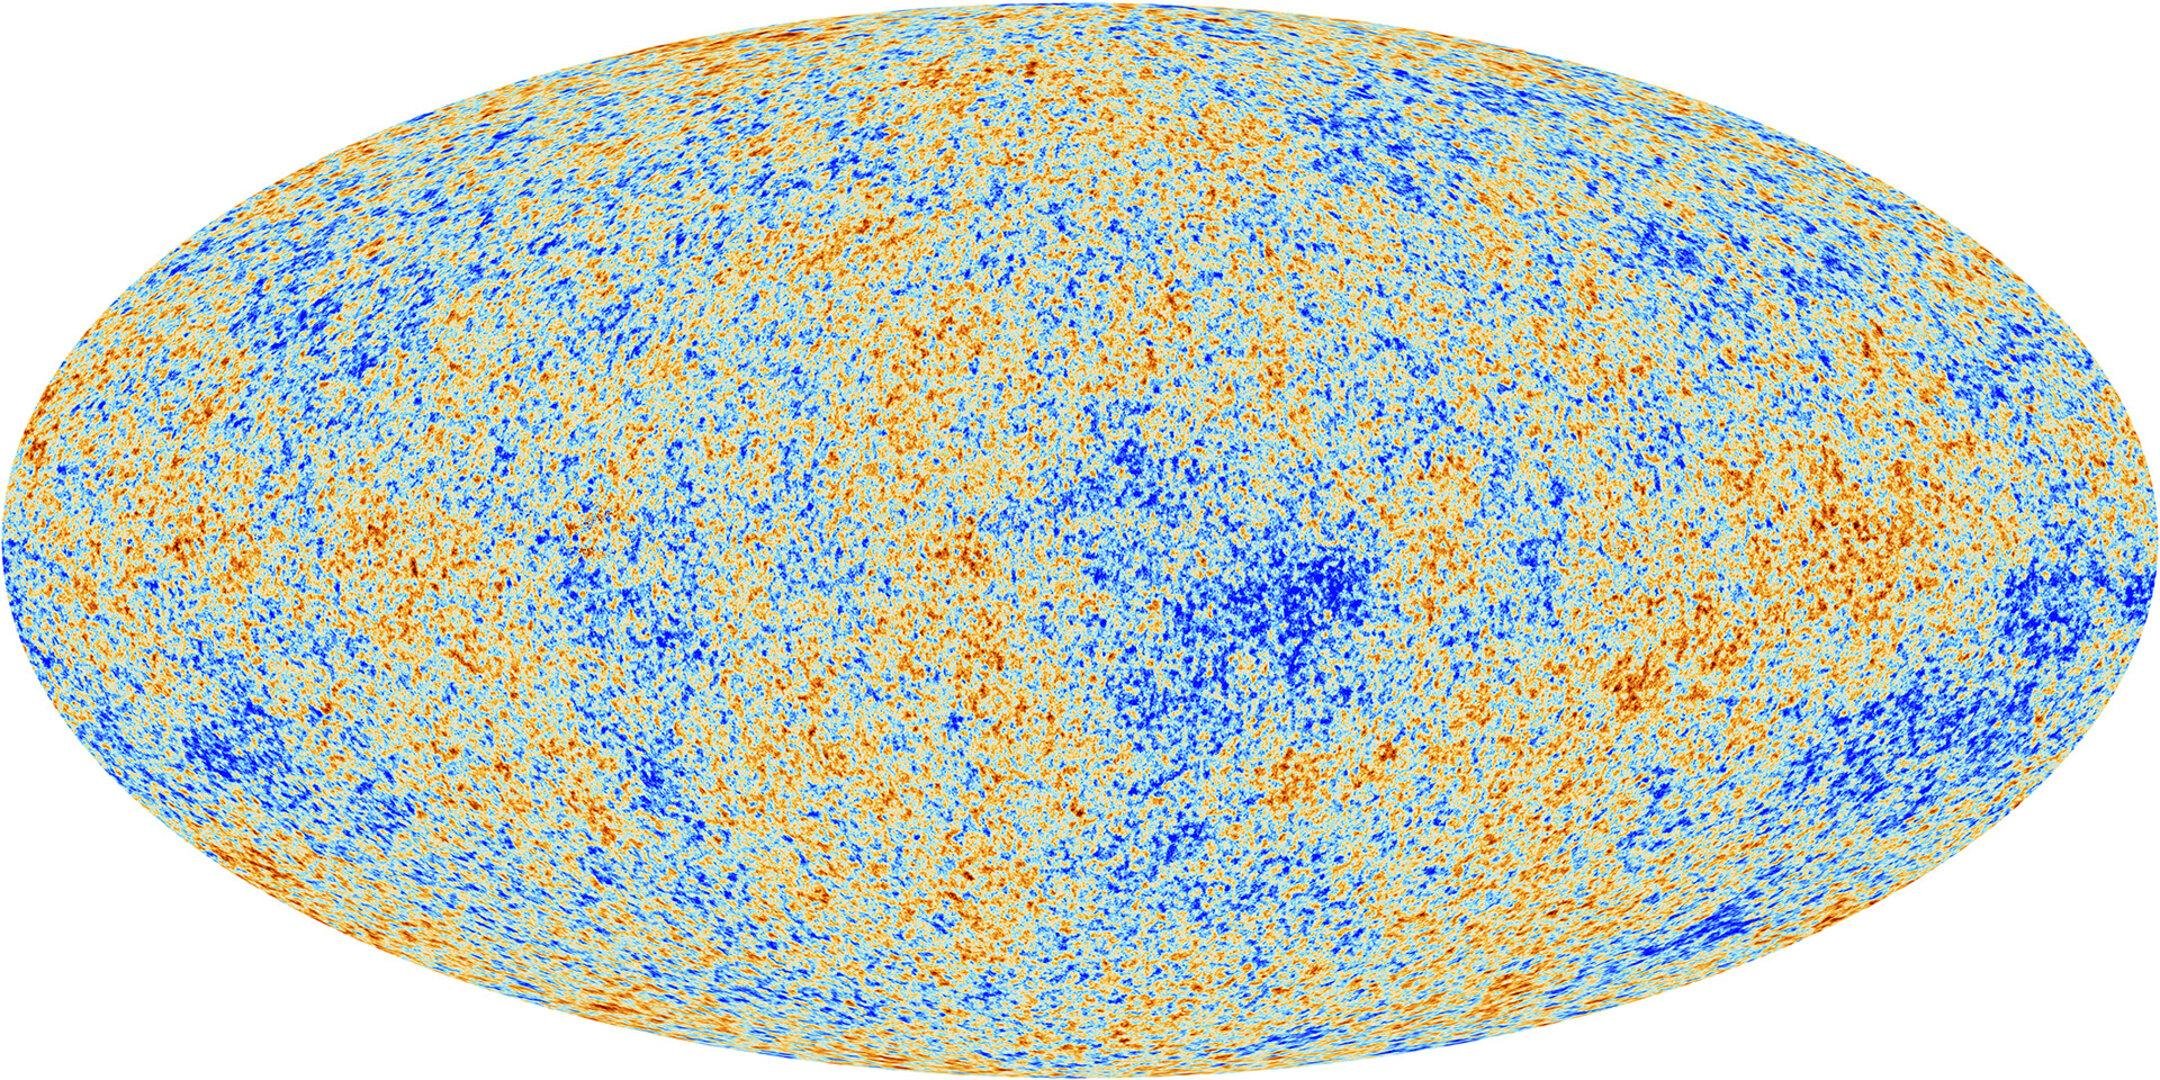 Mapa da radiação cósmica de fundo observada pelo satélite Planck. A diferença de cores nas manchas apresentam as flutuações de temperatura.